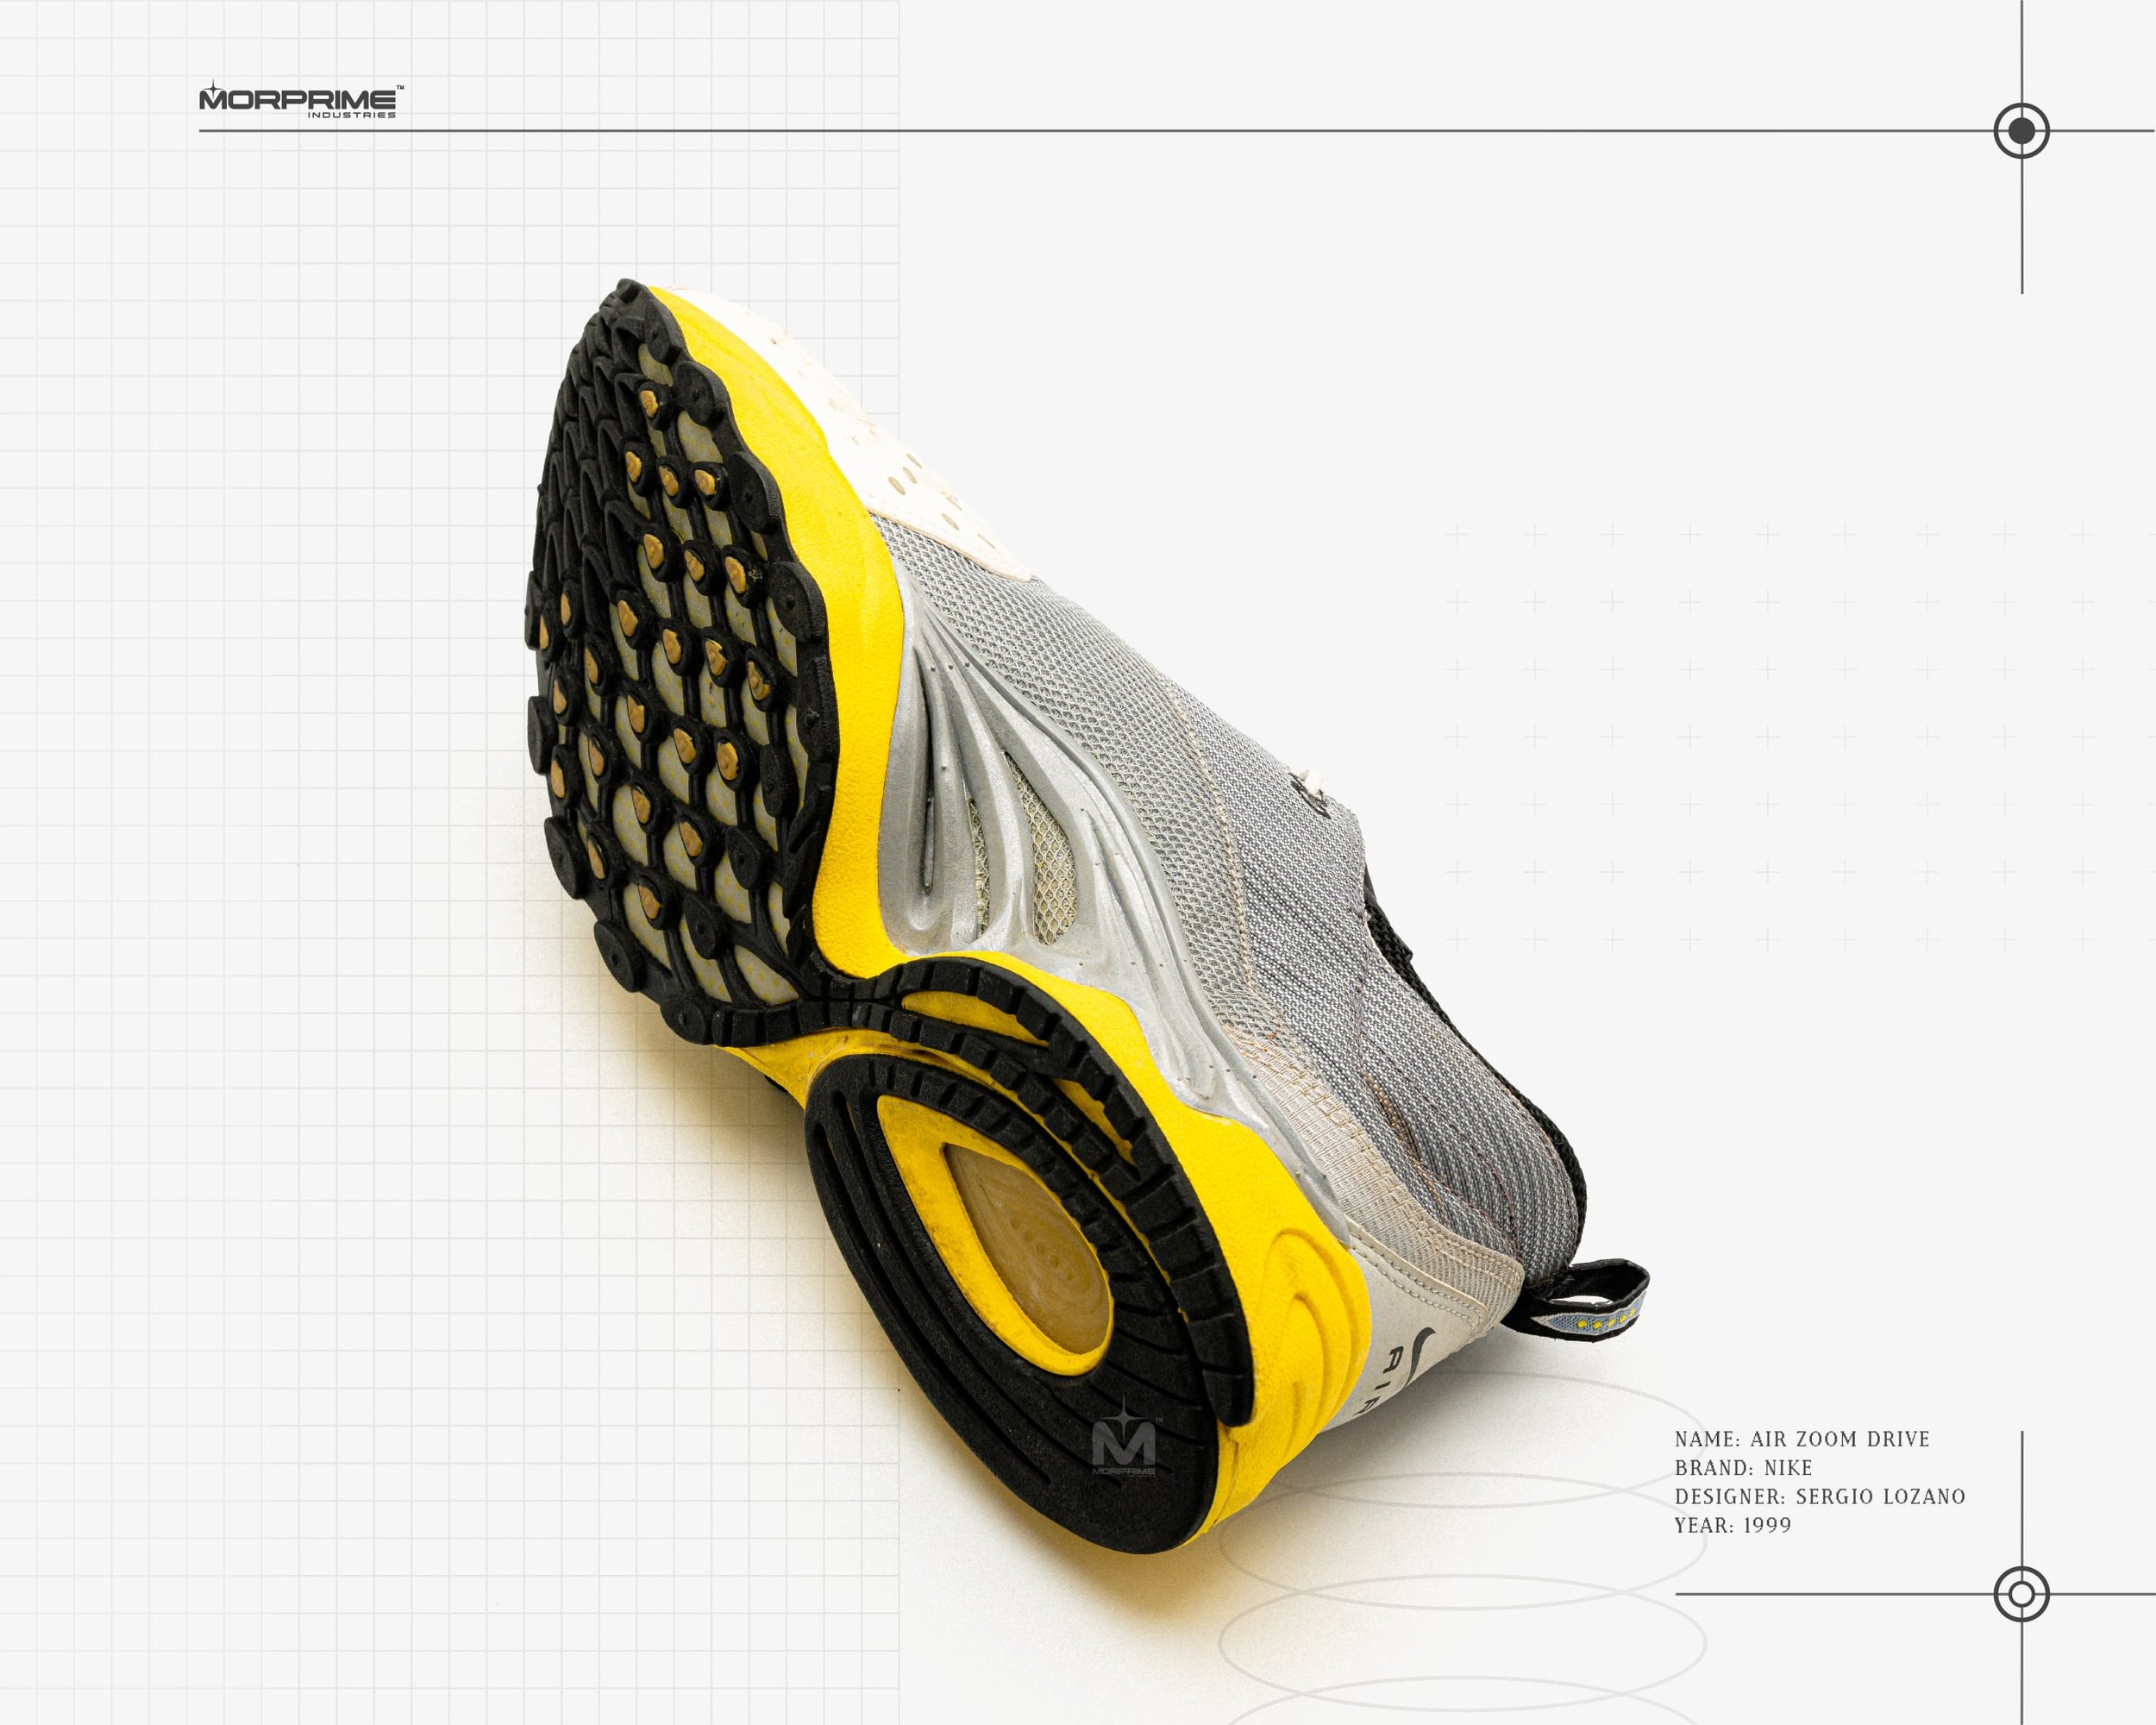 Nike Air Zoom Drive sole-min.jpg